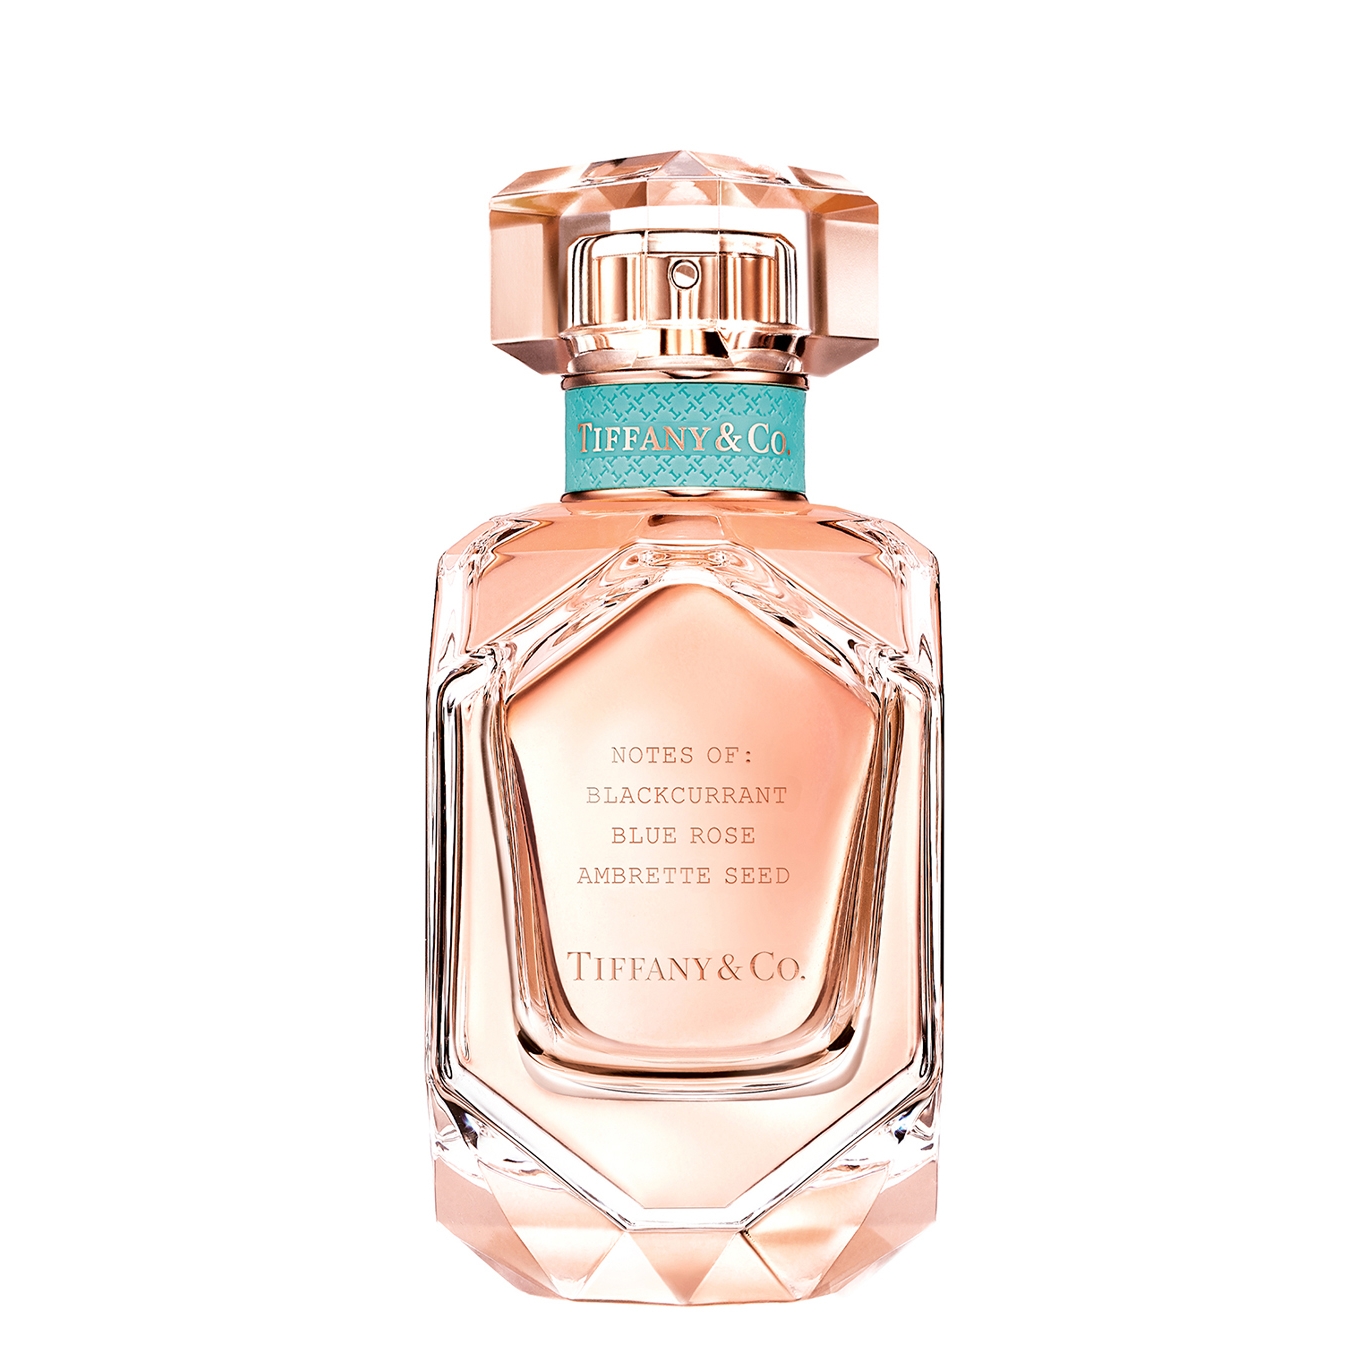 Tiffany & Co. Rose Gold Eau De Parfum 50ml